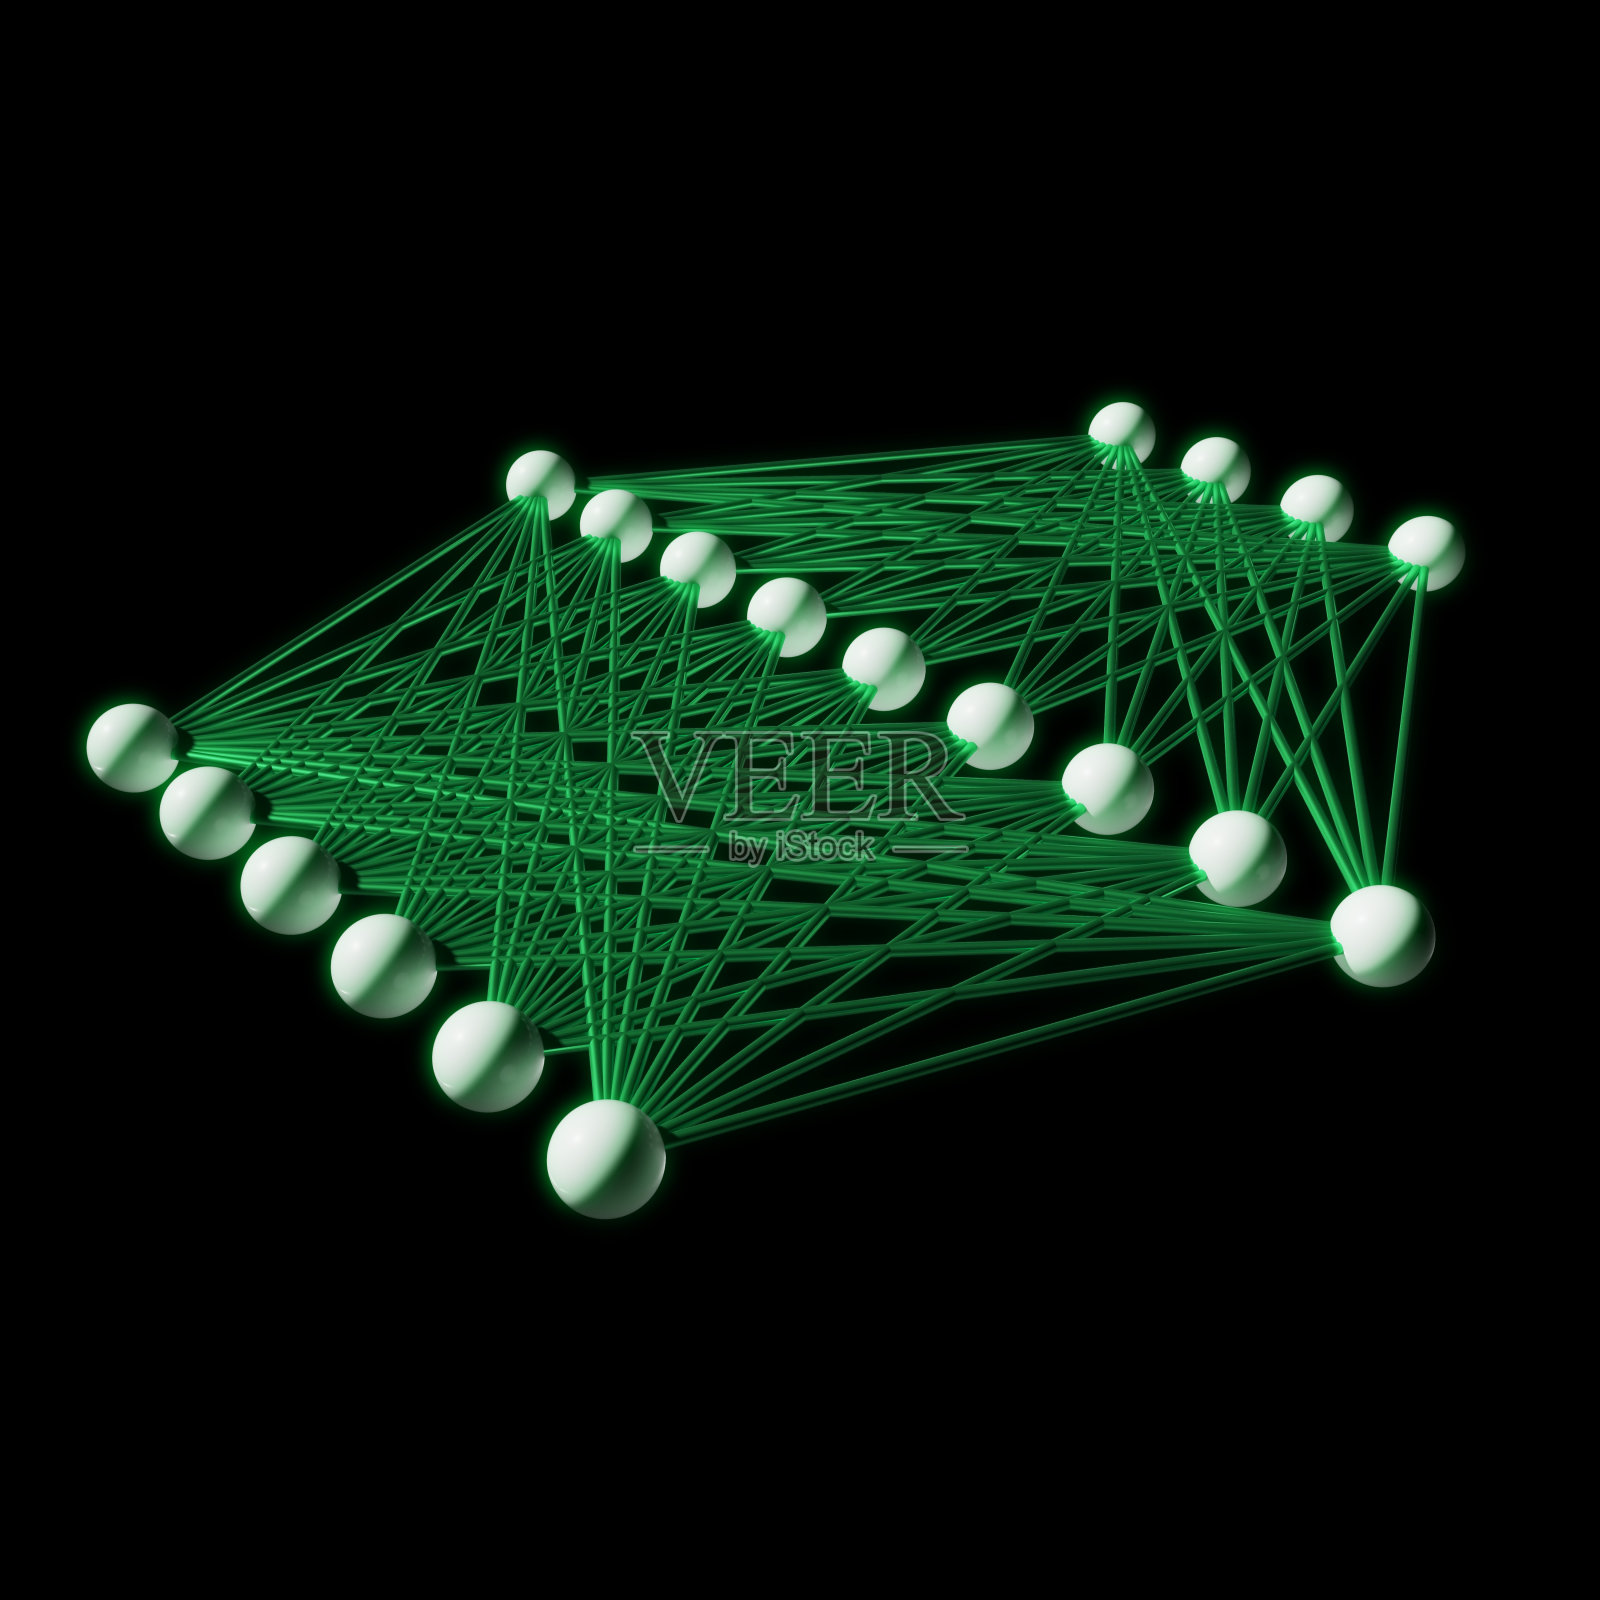 人工神经网络，三维结构模型照片摄影图片